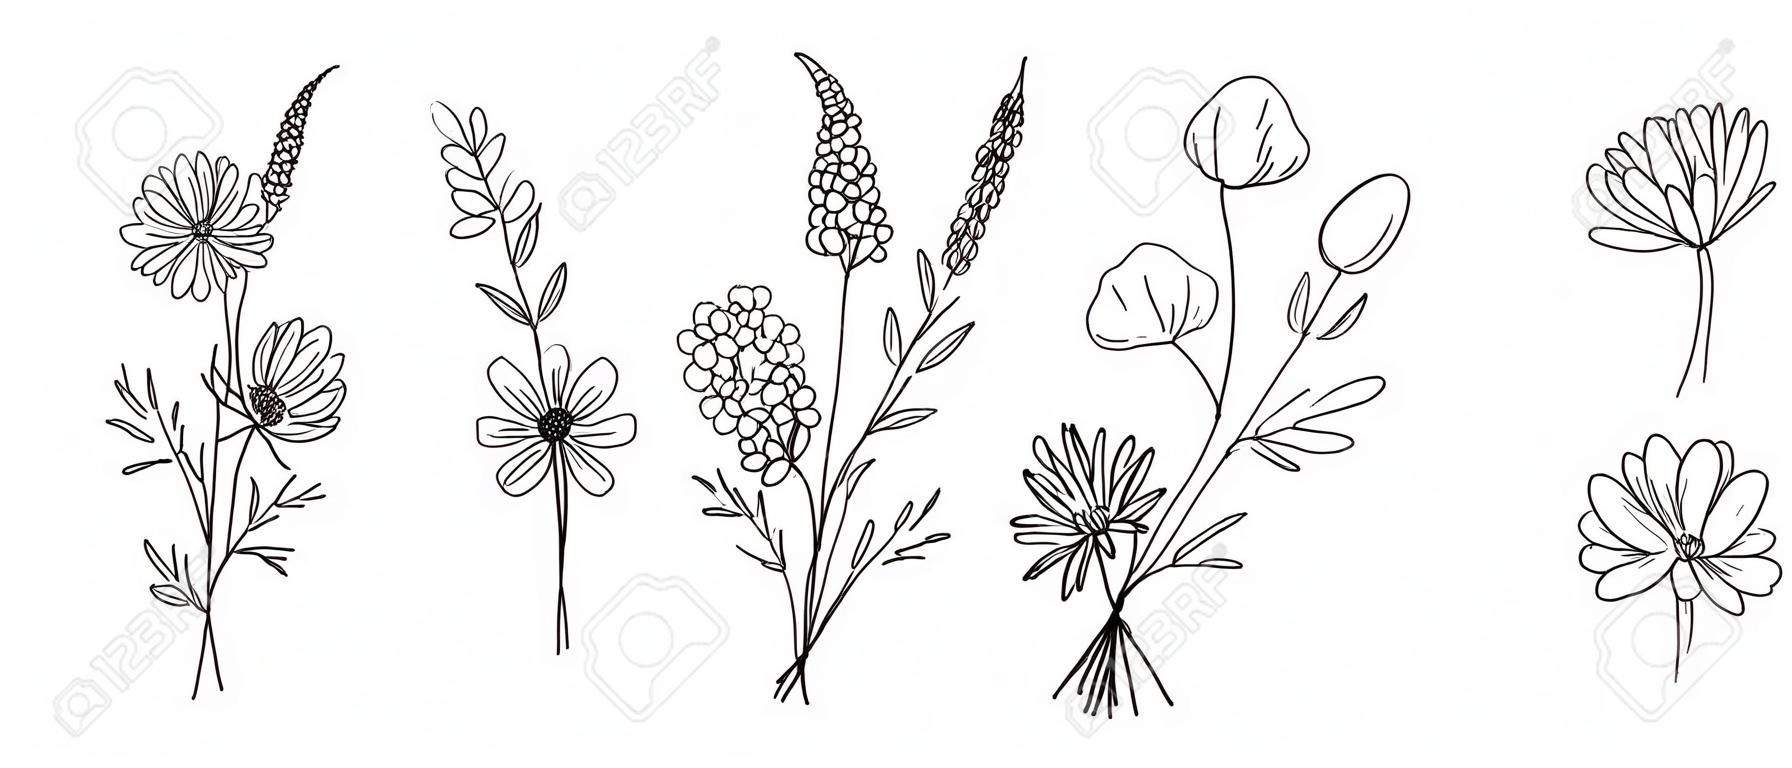 Wildflower-Strichzeichnungssträuße gesetzt. Wiesenblumen, Kräuter, Wildpflanzen, botanische handgezeichnete Elemente für Designprojekte. Vektor-Illustration.